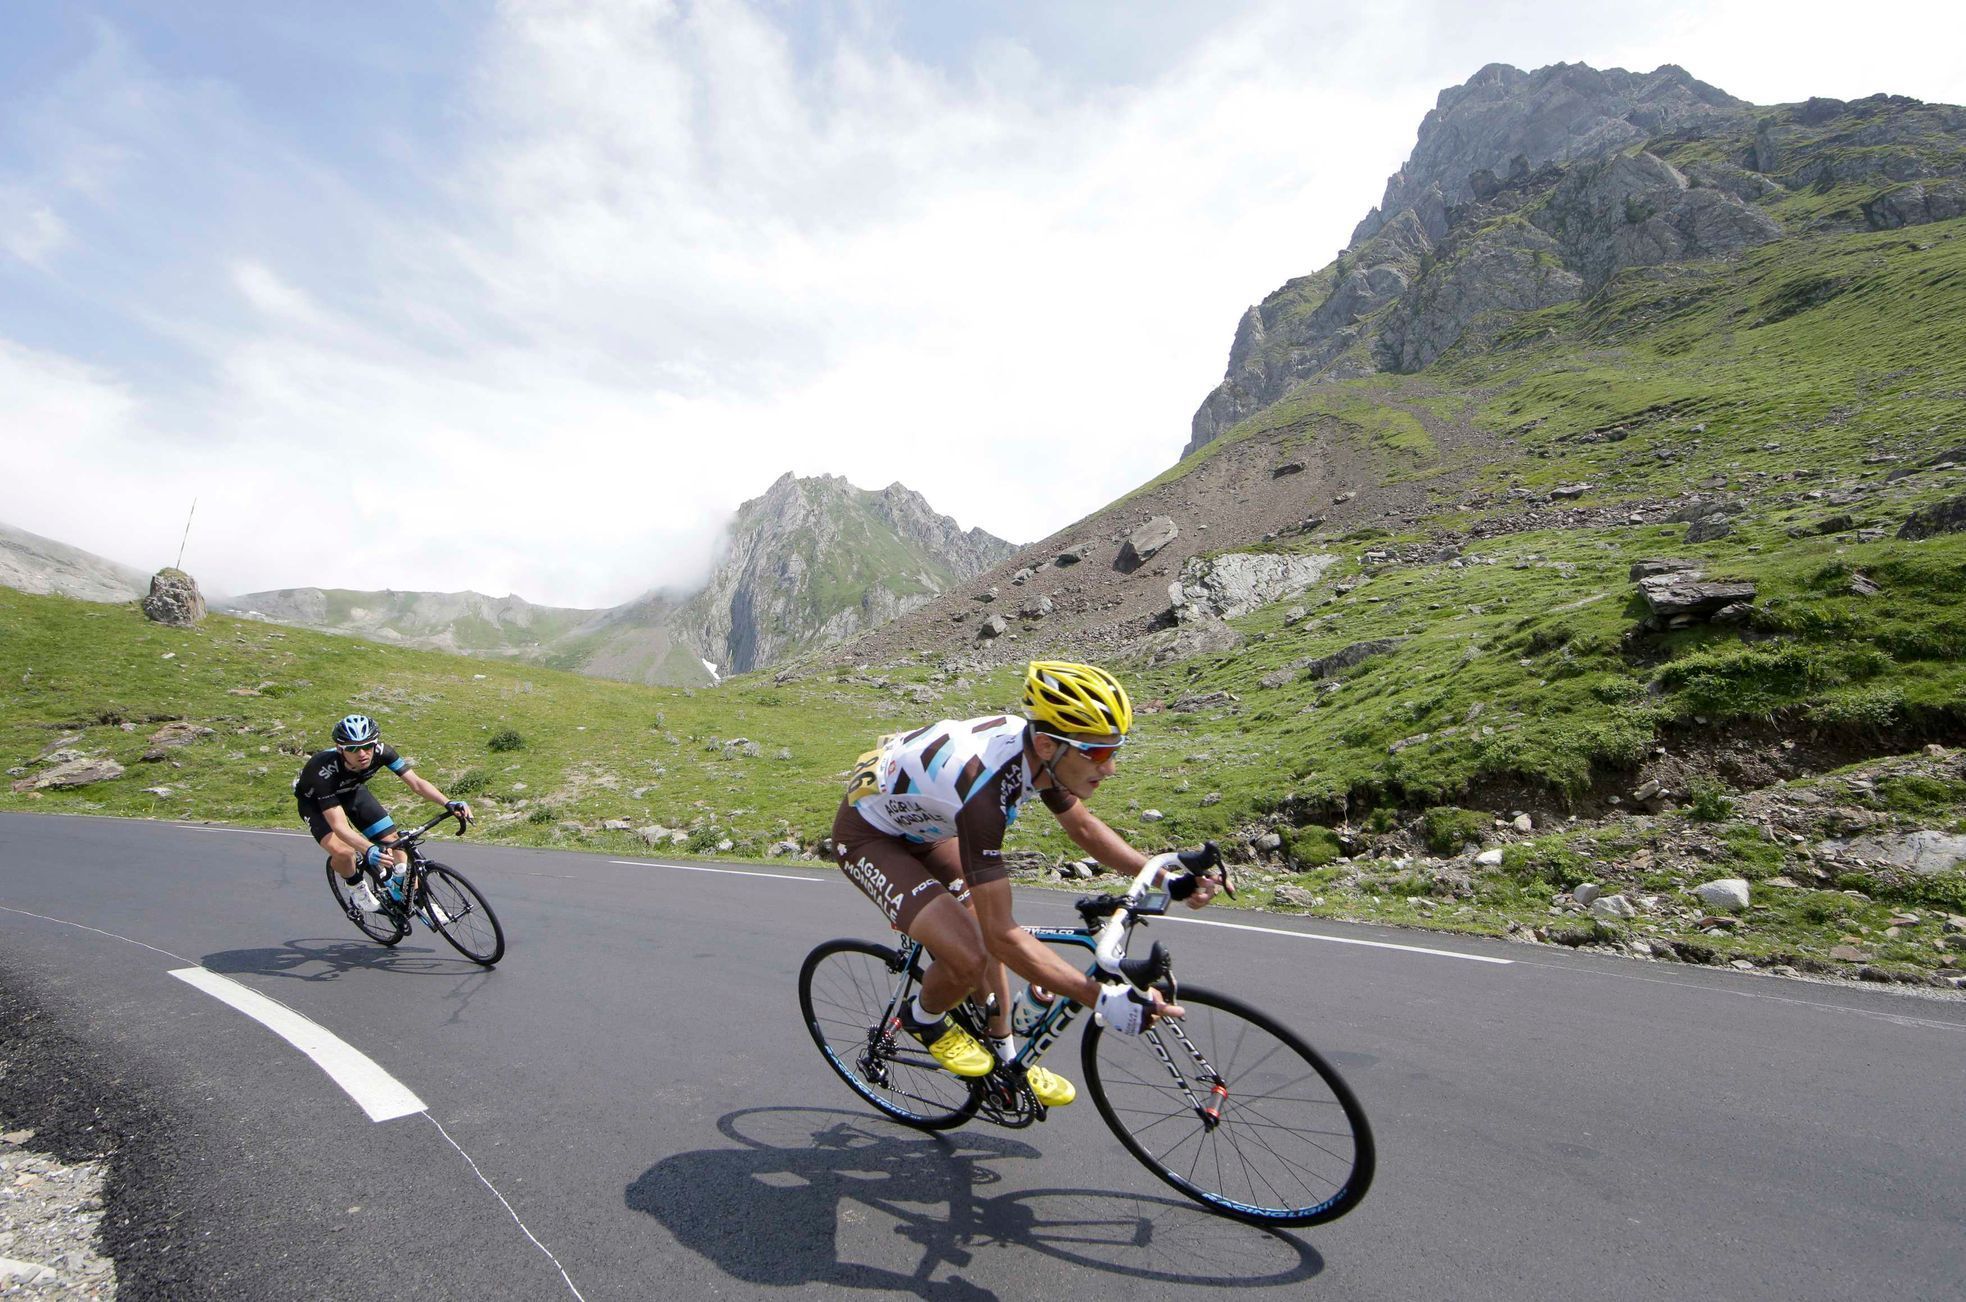 Nieve Iturralde v 18. etapě Tour de France 2014 (Pyreneje)